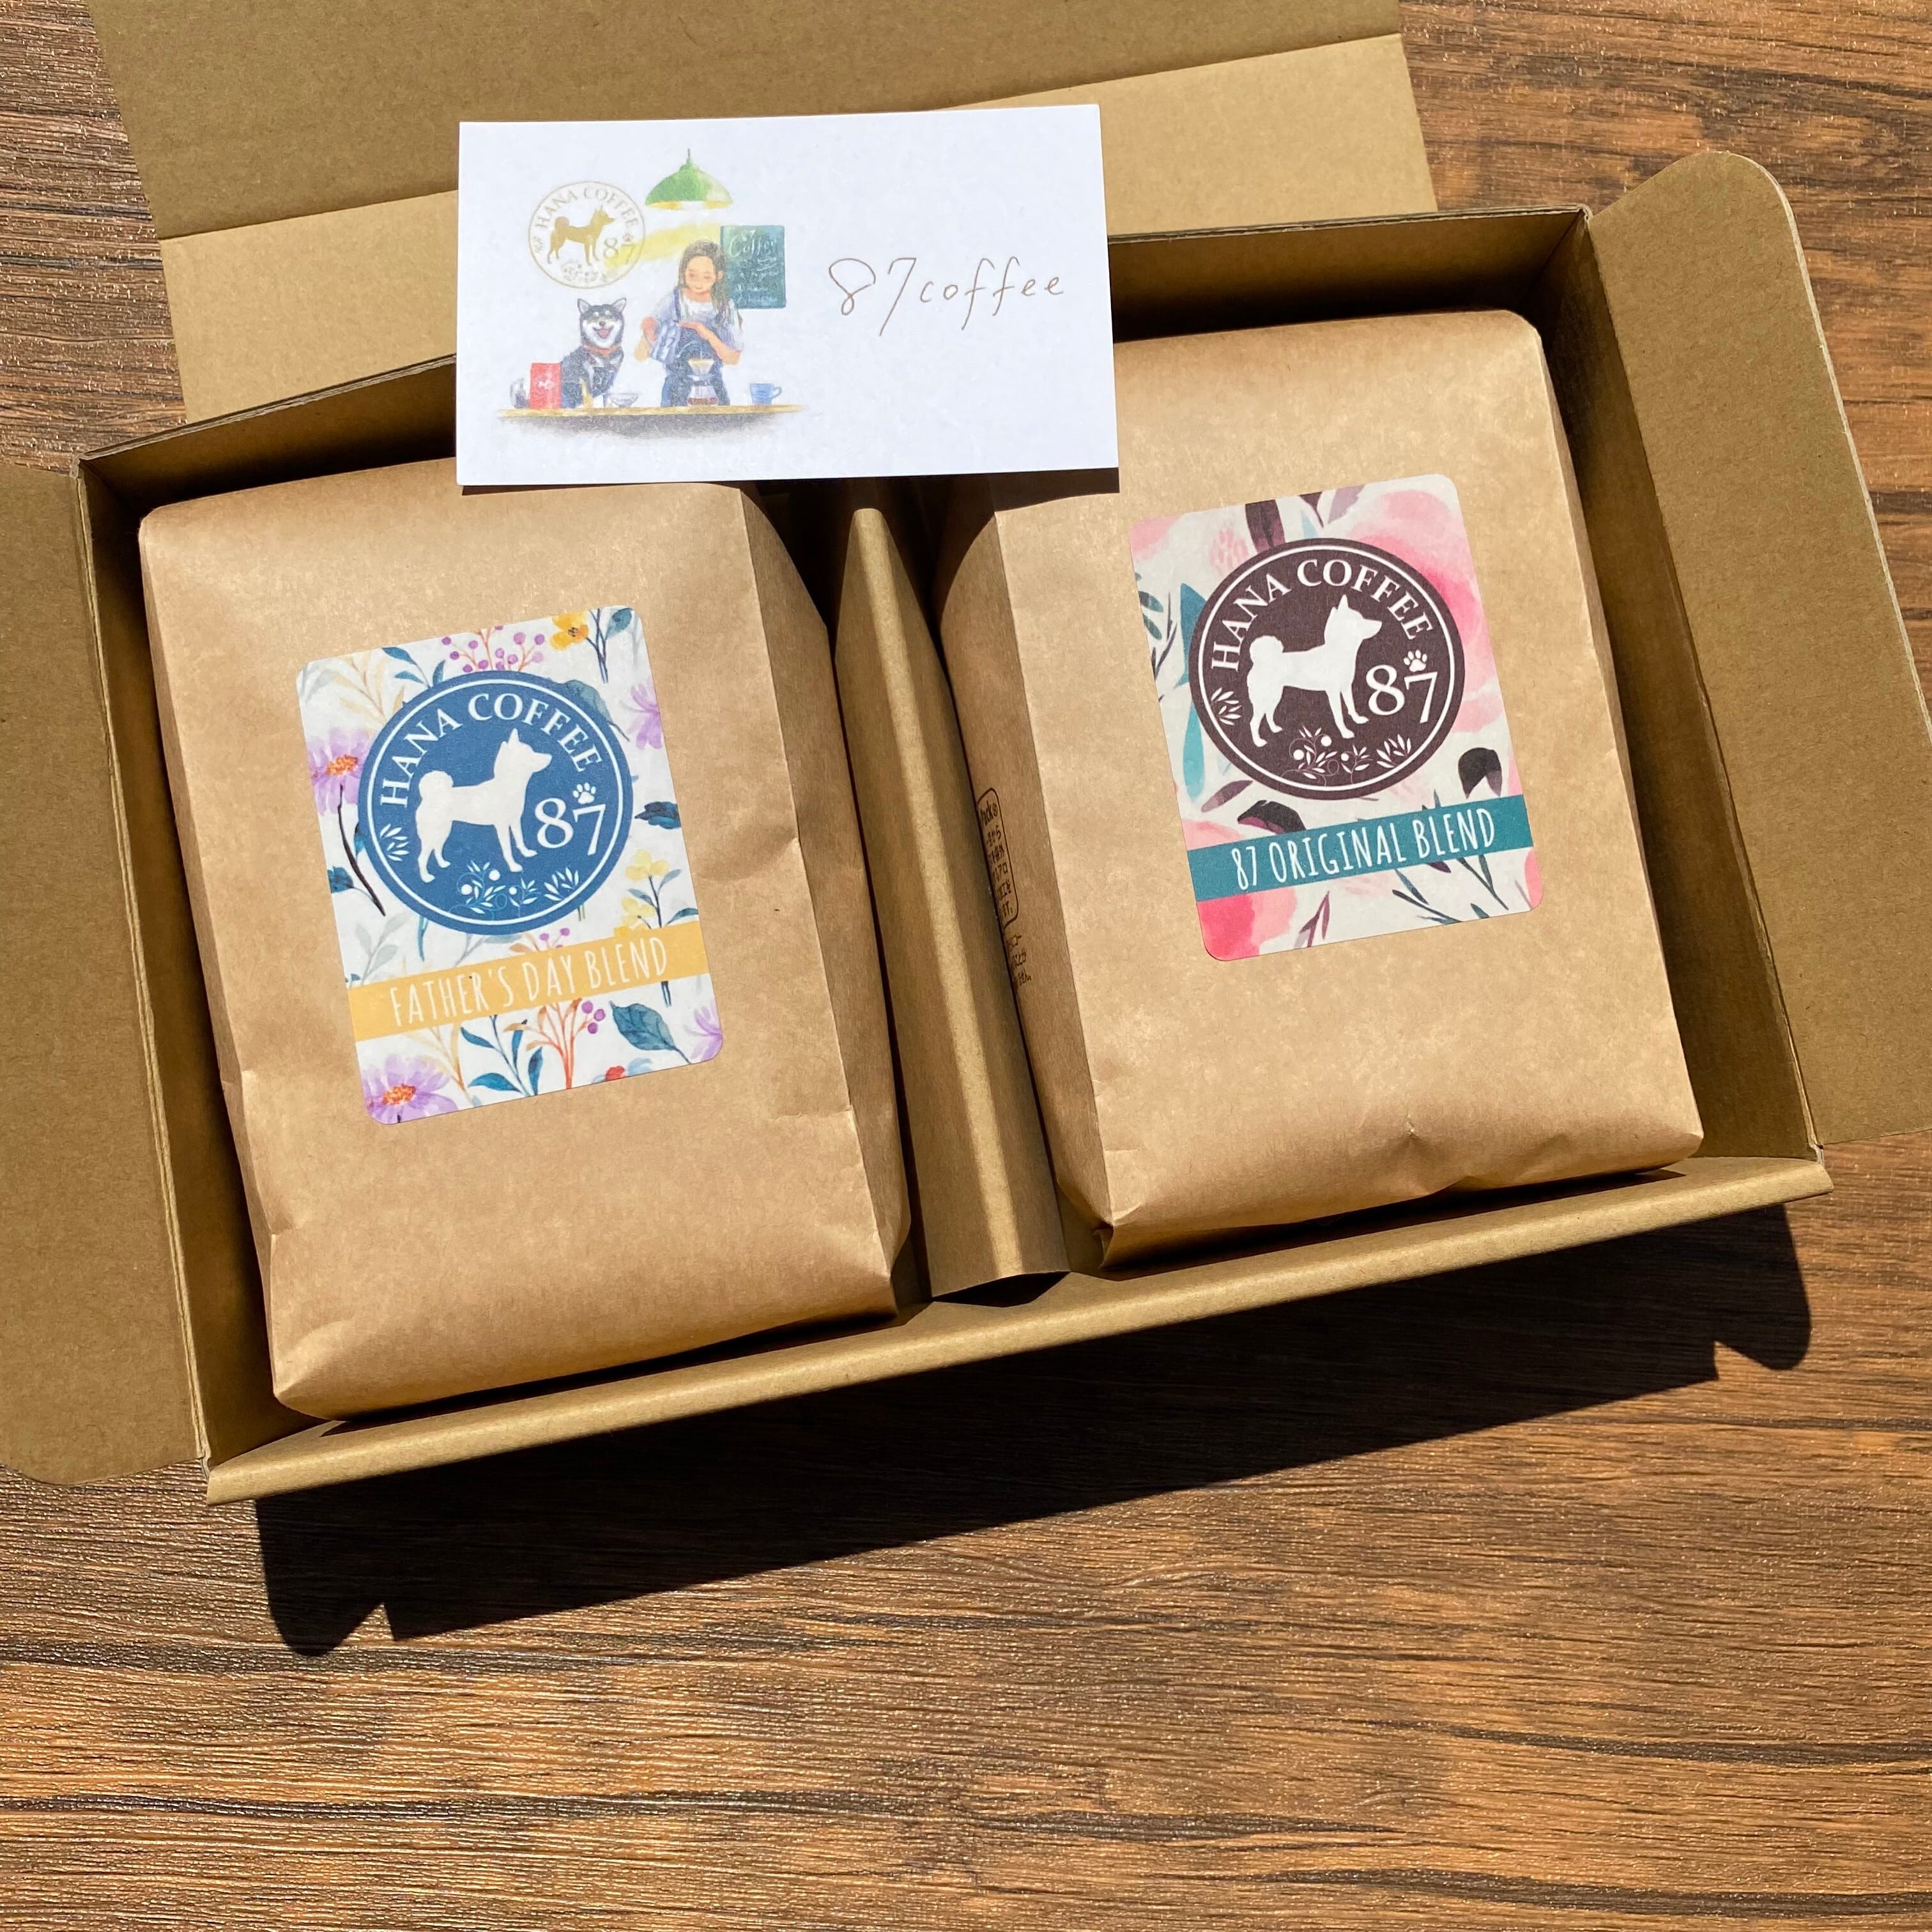 日本全国 送料無料 父の日 コーヒー豆 ギフト 4種類の スペシャリティ コーヒー詰め合わせ キリマンジャロ モカマタリ マンデリン パプアニューギニア 送料無料